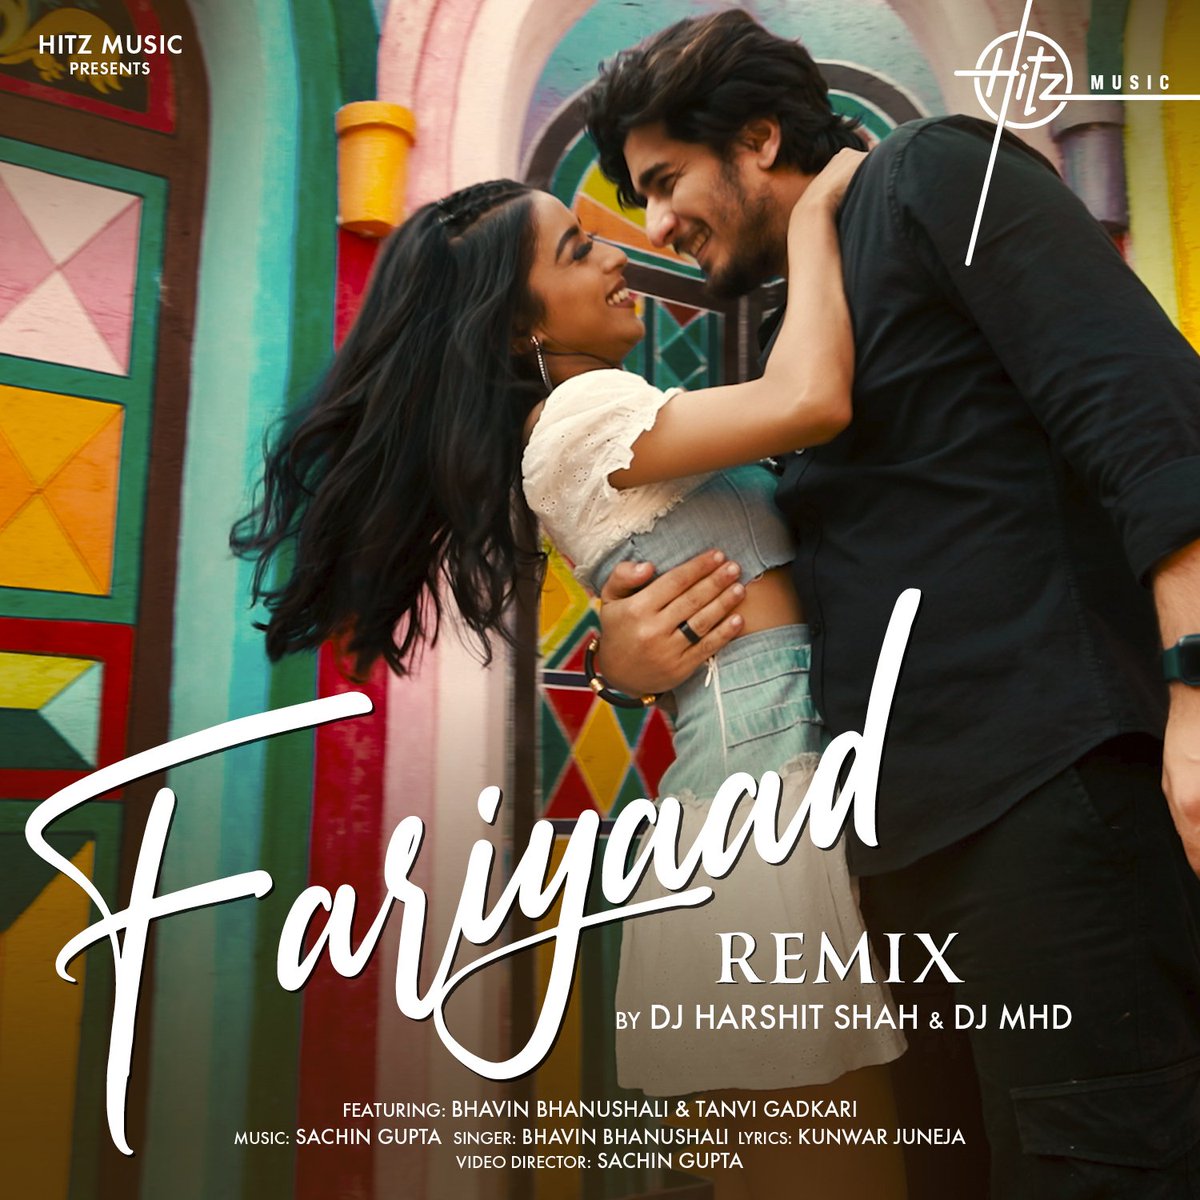 Fariyaad bina, pyaar adhoora 💕☺️ 
#LetsFariyaad Remix by @DJHarshitshah & @deejaymhdind out now only on @HitzMusicoff

#BhavinBhanushali #TanviGadkari @sachingupta1208 #KunwarJuneja